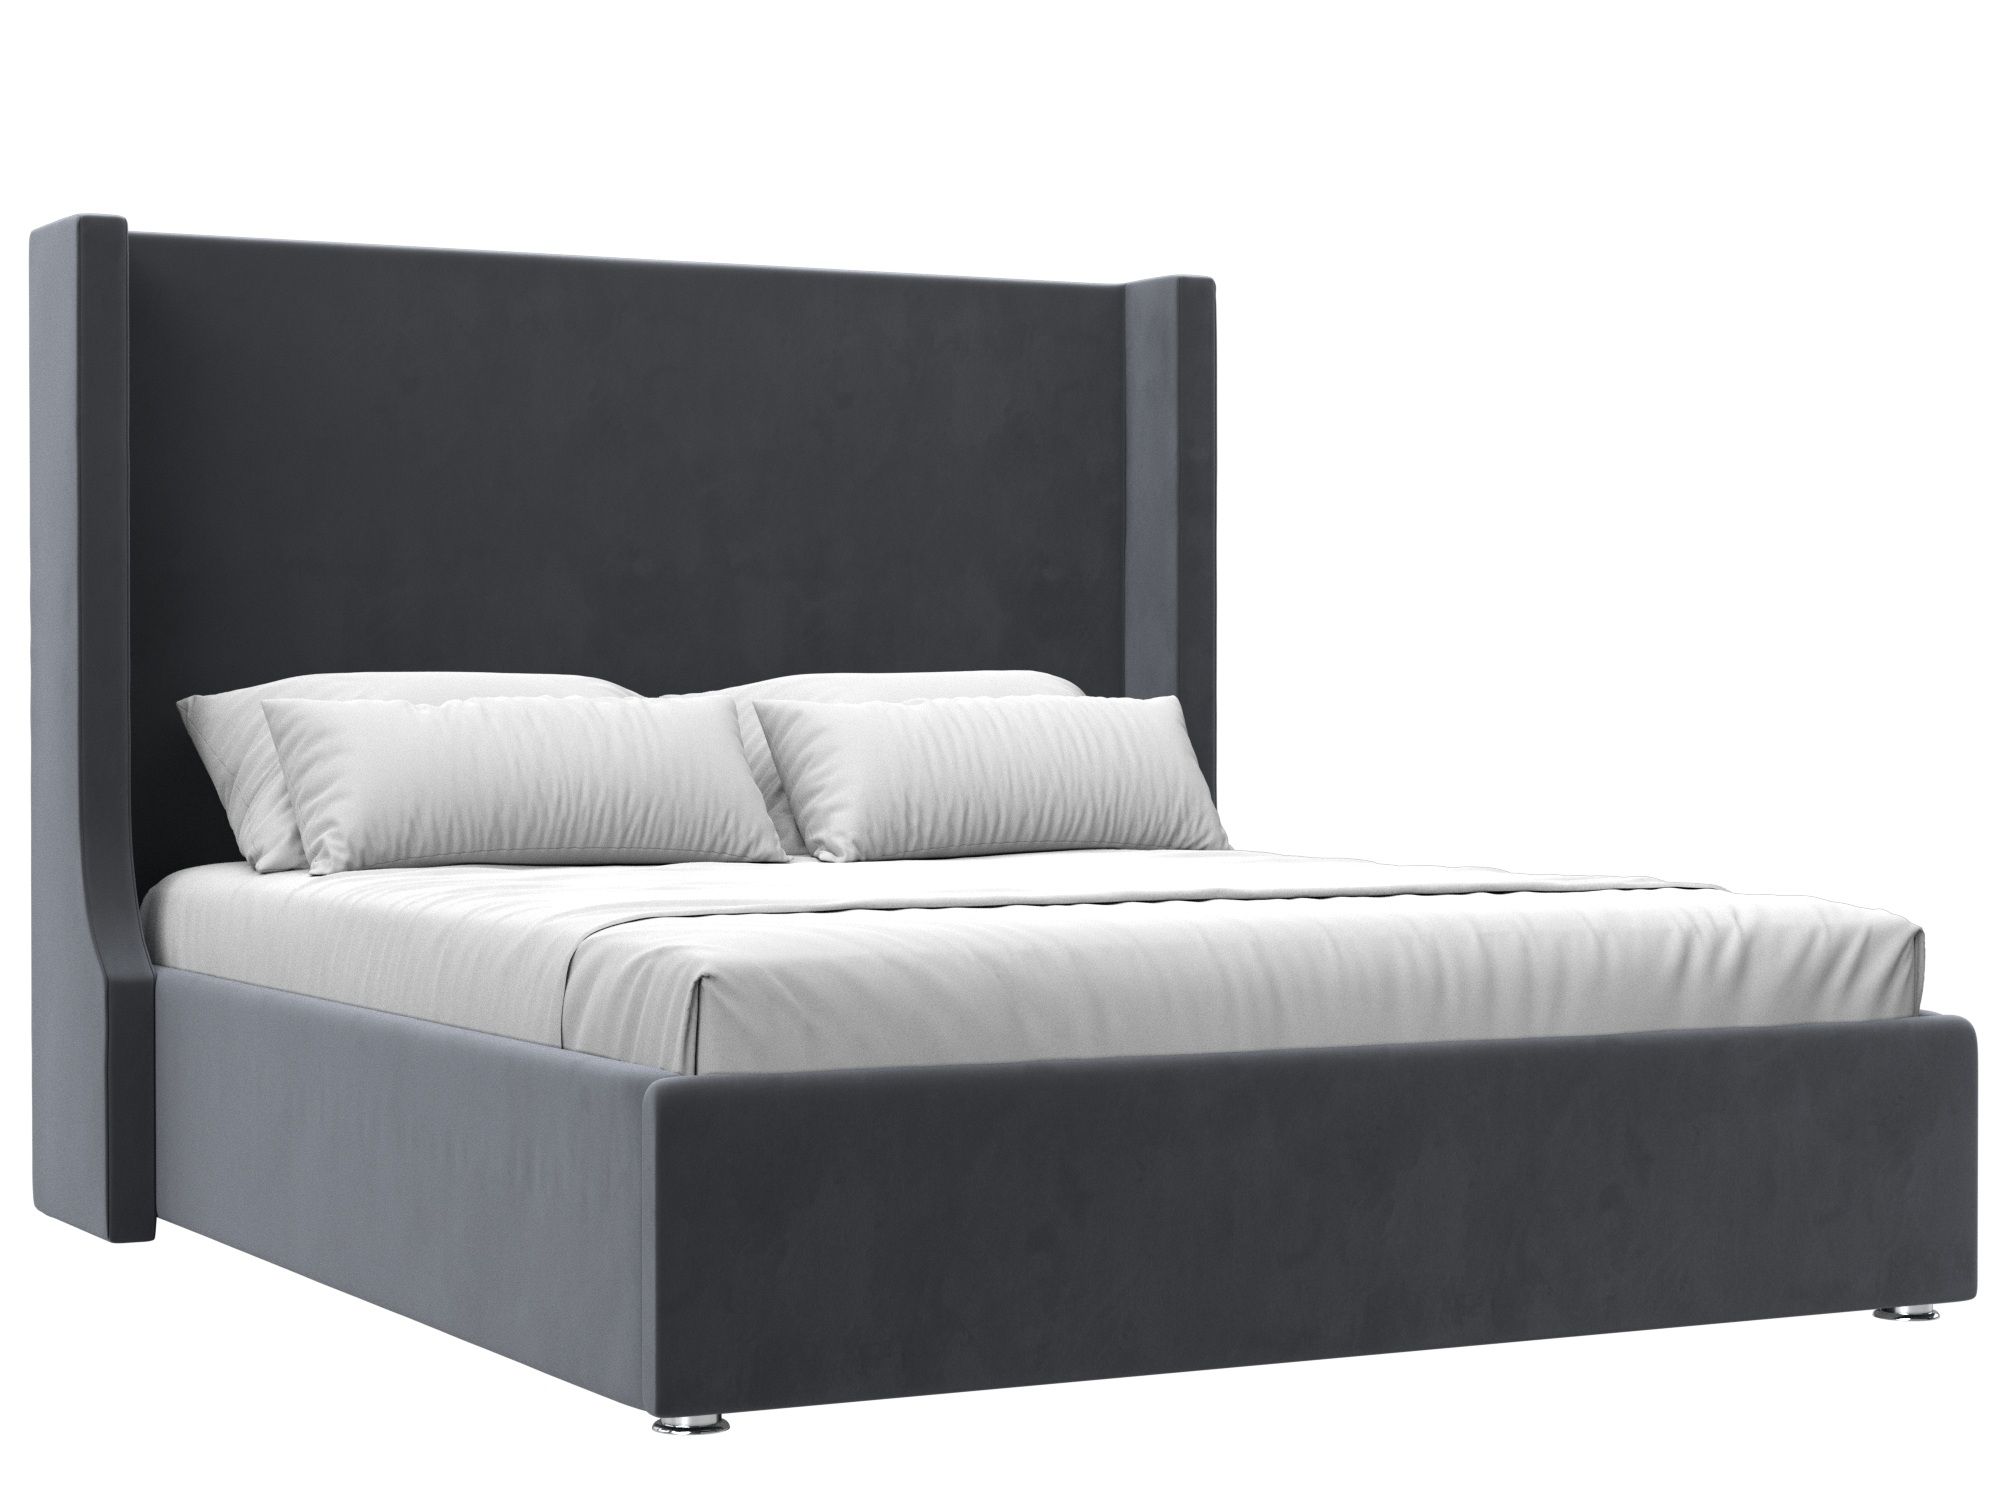 Кровать интерьерная Ларго 160 (серый)